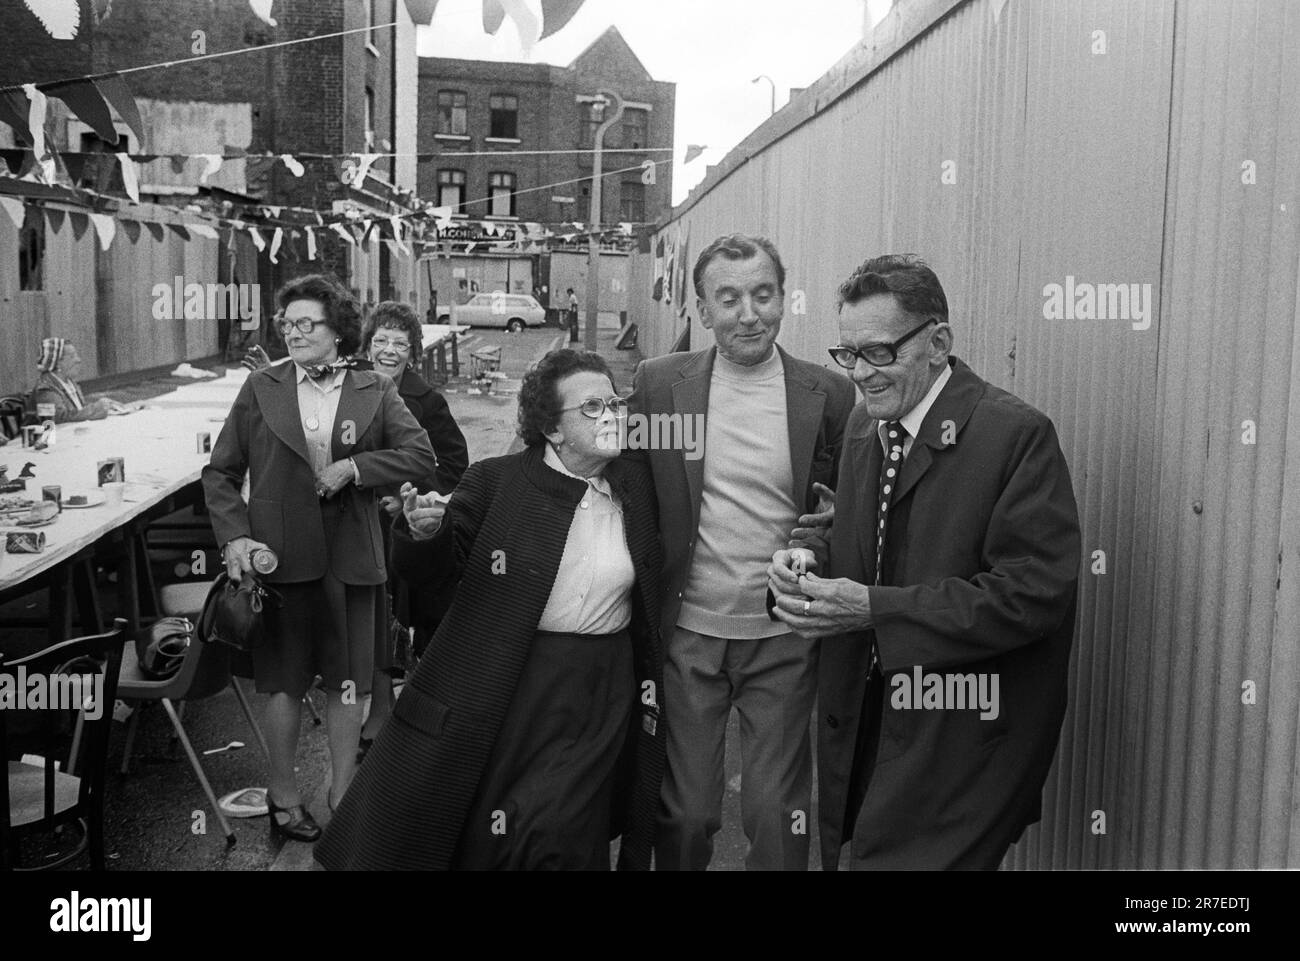 Celebrazione del Giubileo d'Argento della Regina Elisabetta II 1977. Repton Street, la festa di strada è finita, ma non è stato superato. Whitechapel, Tower Hamlets, East London, Inghilterra circa giugno 1977. Foto Stock